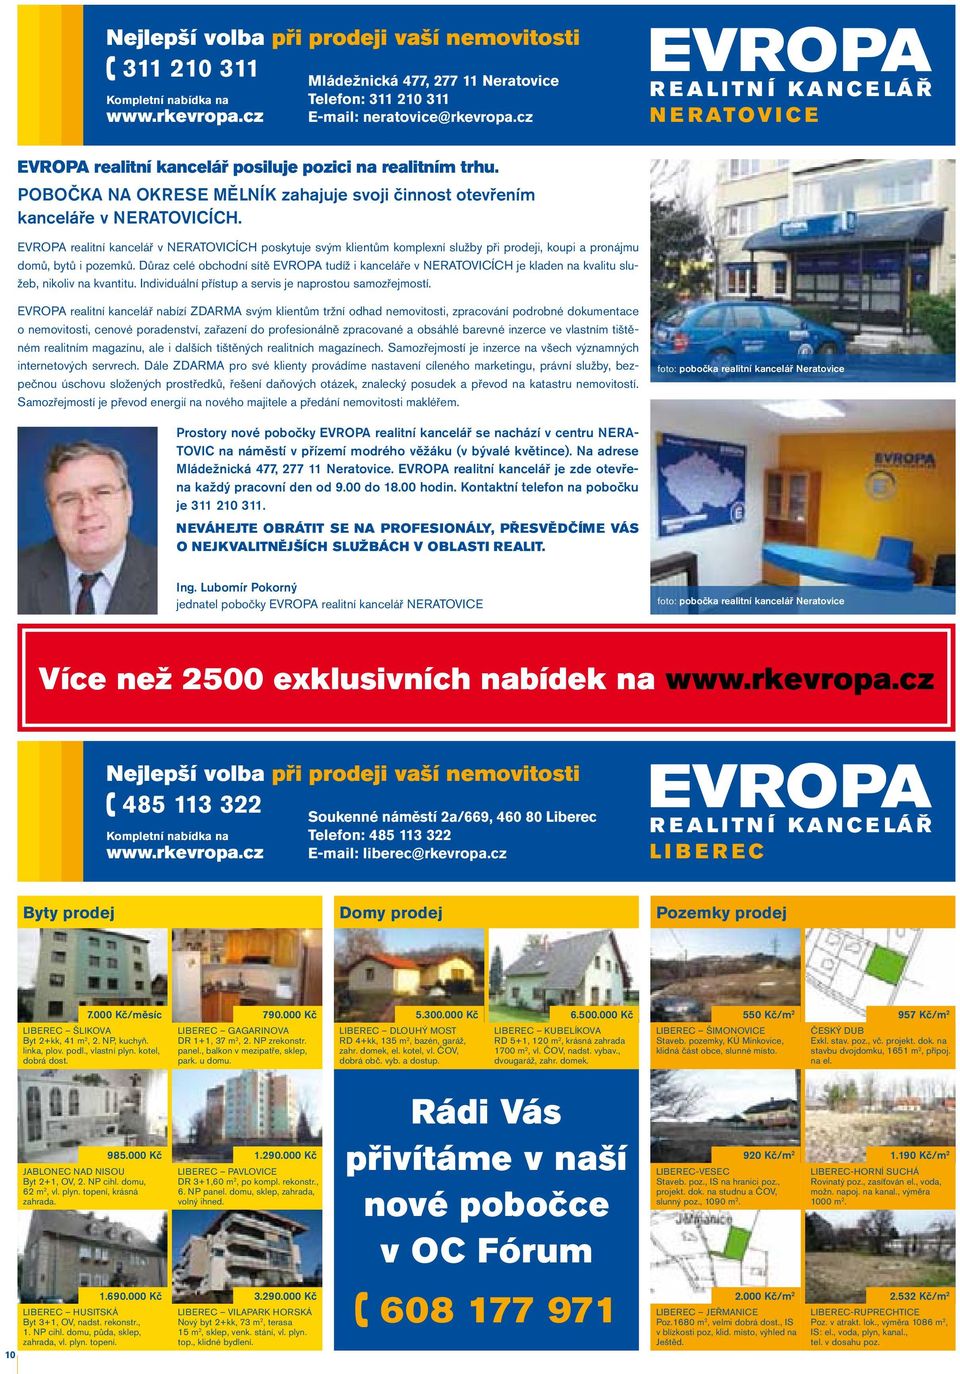 EVROPA realitní kancelář v NERATOVICÍCH poskytuje svým klientům komplexní služby při prodeji, koupi a pronájmu domů, bytů i pozemků.